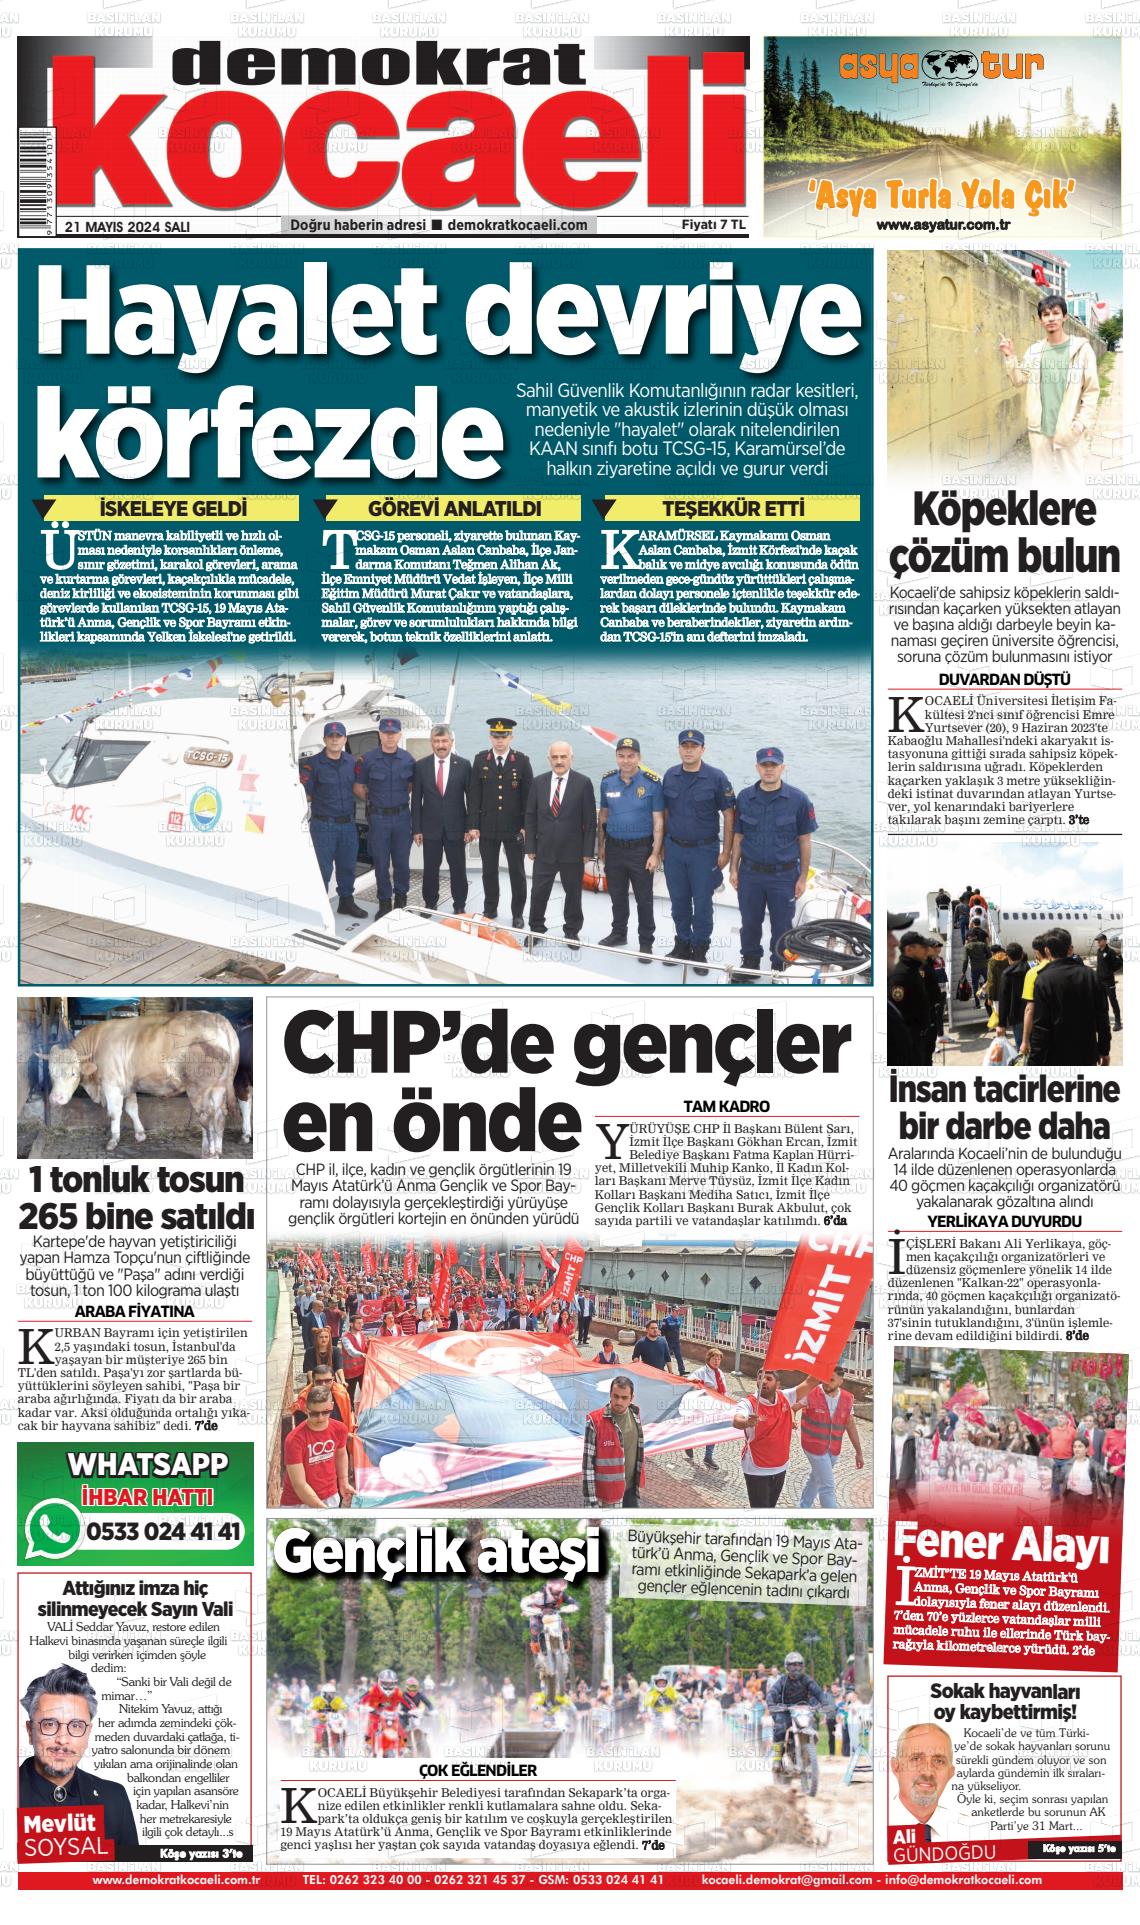 KOCAELİ DEMOKRAT Gazetesi